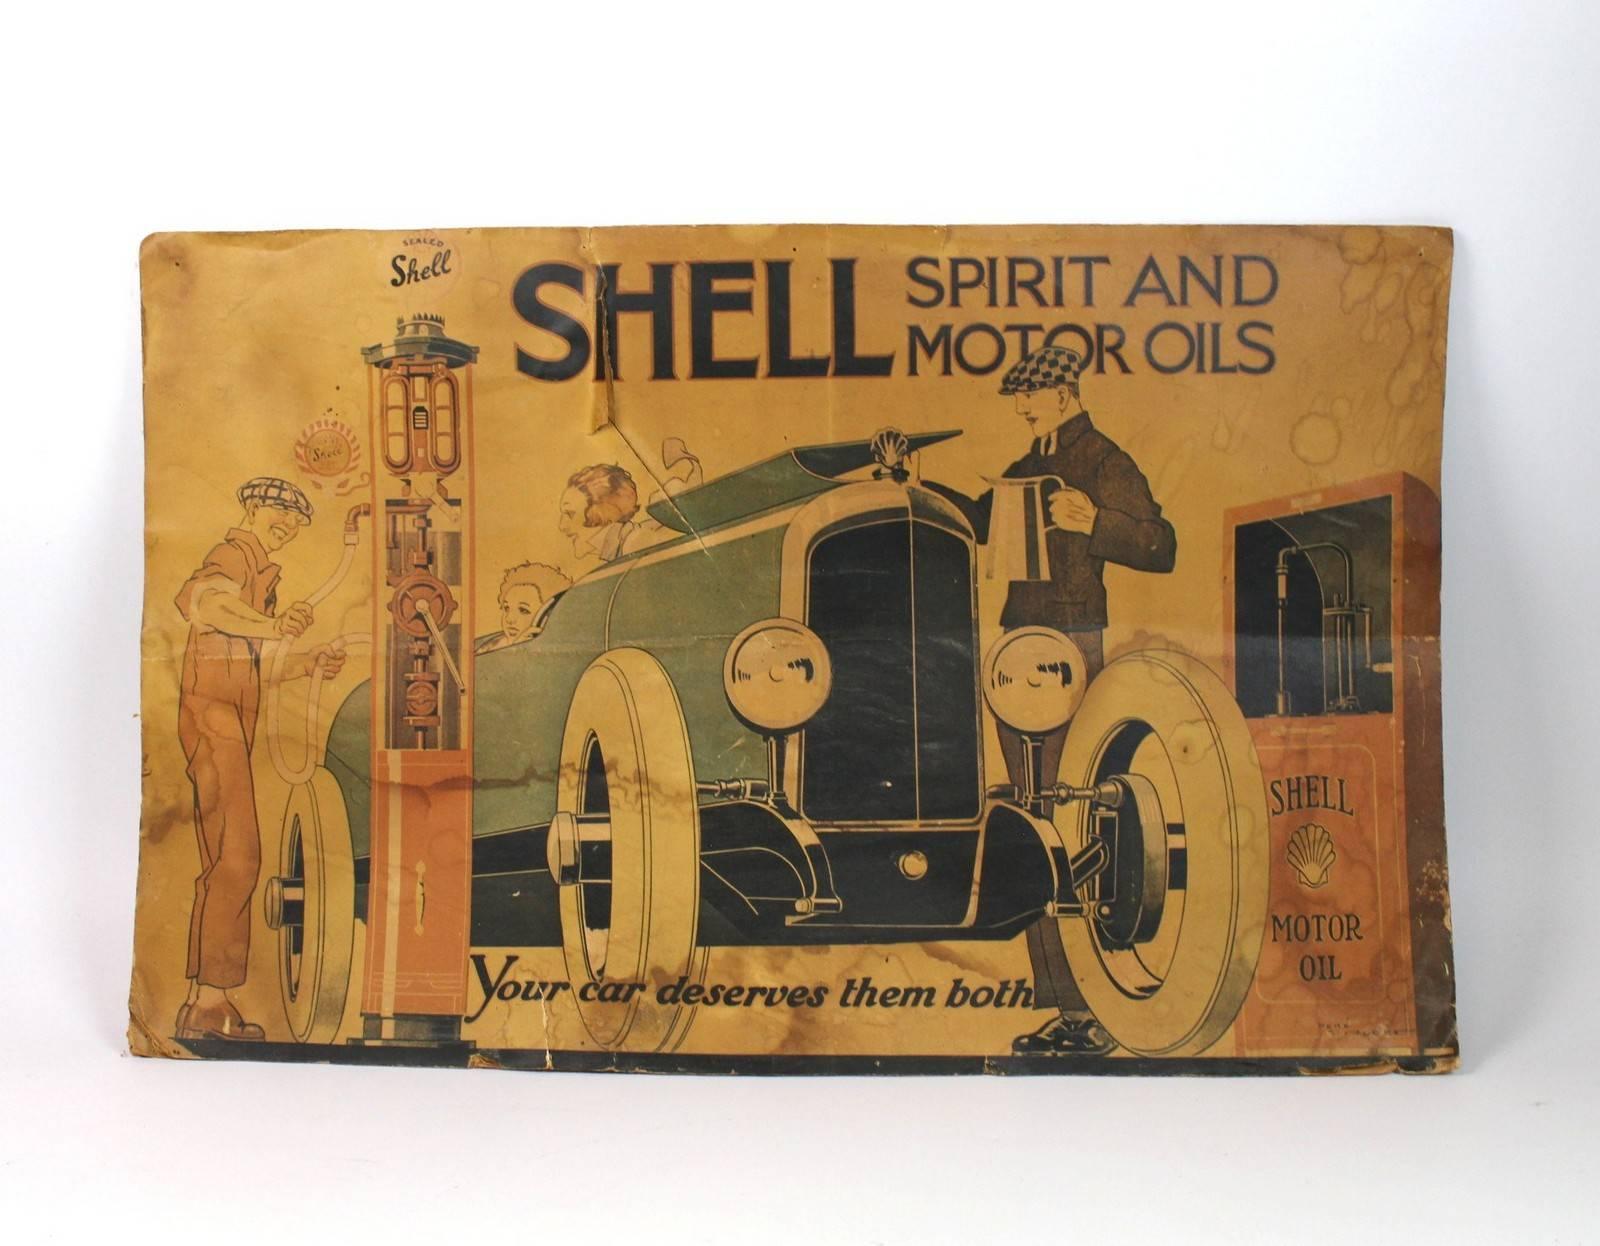 Vintage Poster Shell Motor Oil Gasoline par Rene Vincent de l'année 1926.
Dimensions approximatives : 46 x 73 cm.
Etat d'ancienneté avec traces d'utilisation renforcées, plis et fissures.